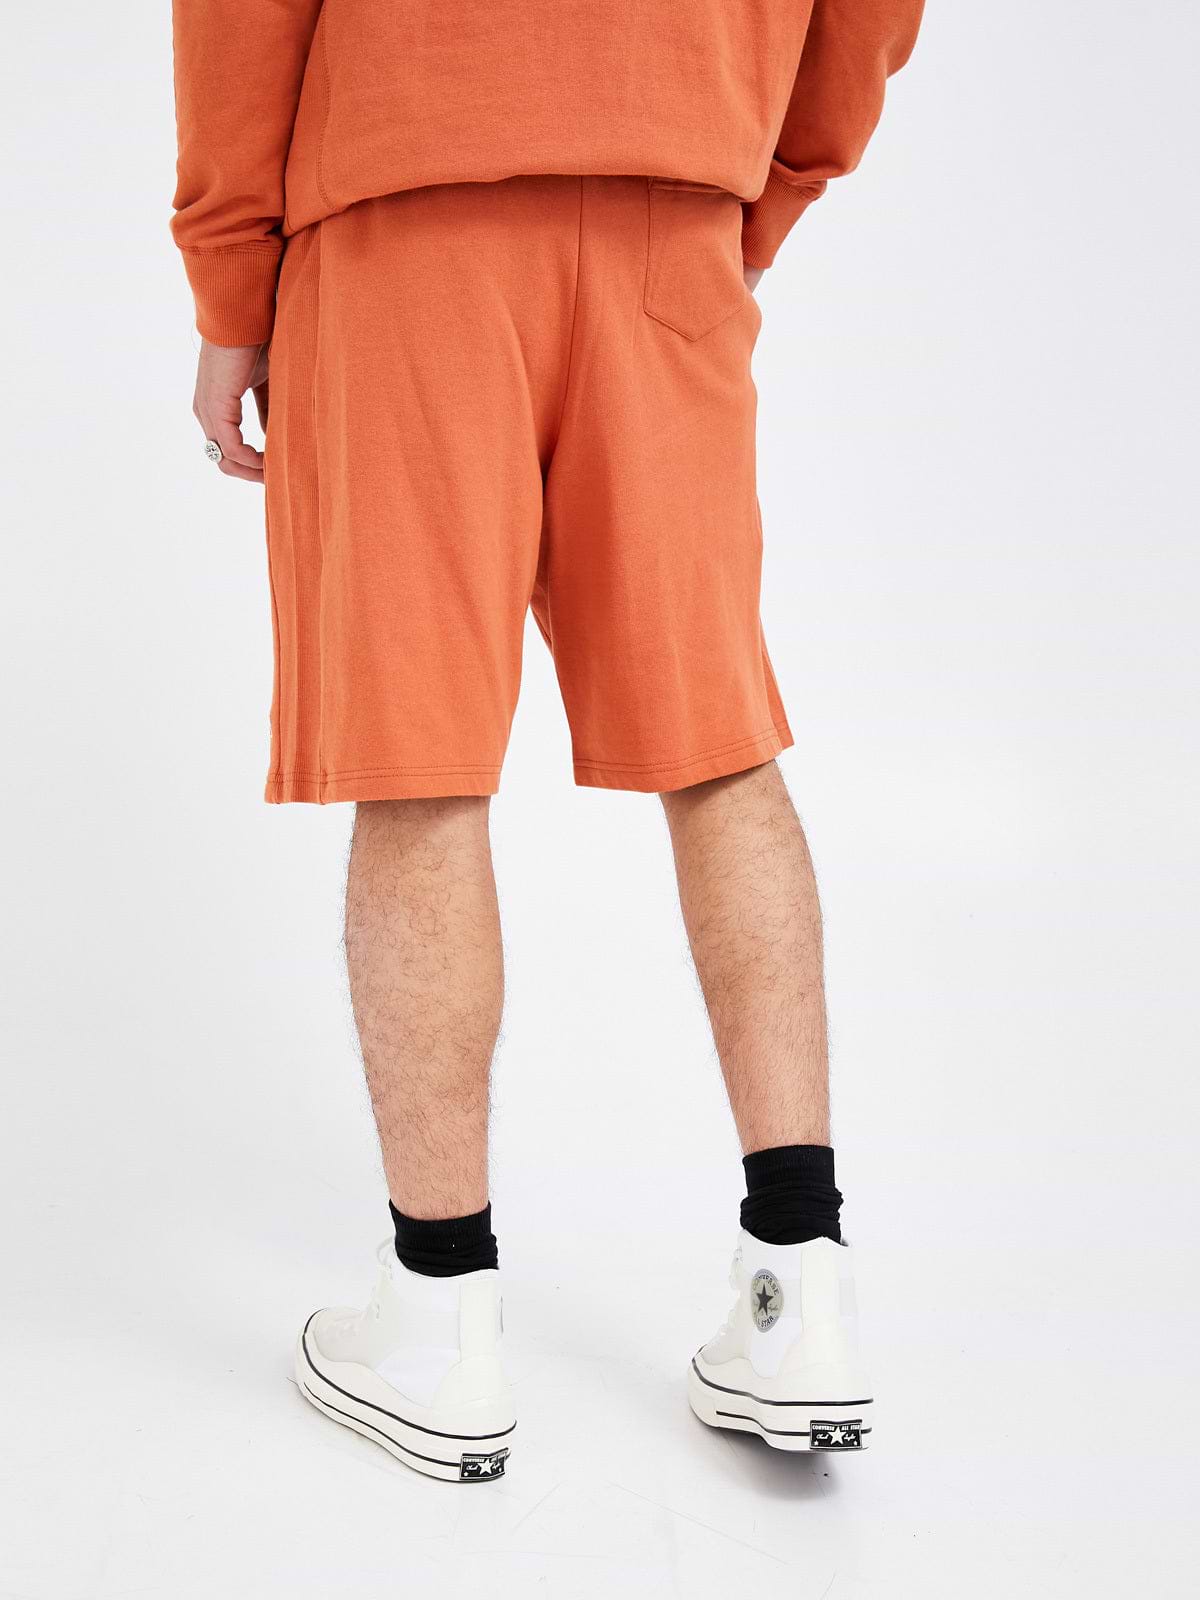 מכנסי ברמודה עם פאץ' לוגו- Russell Athletic|ראסל אטלטיק